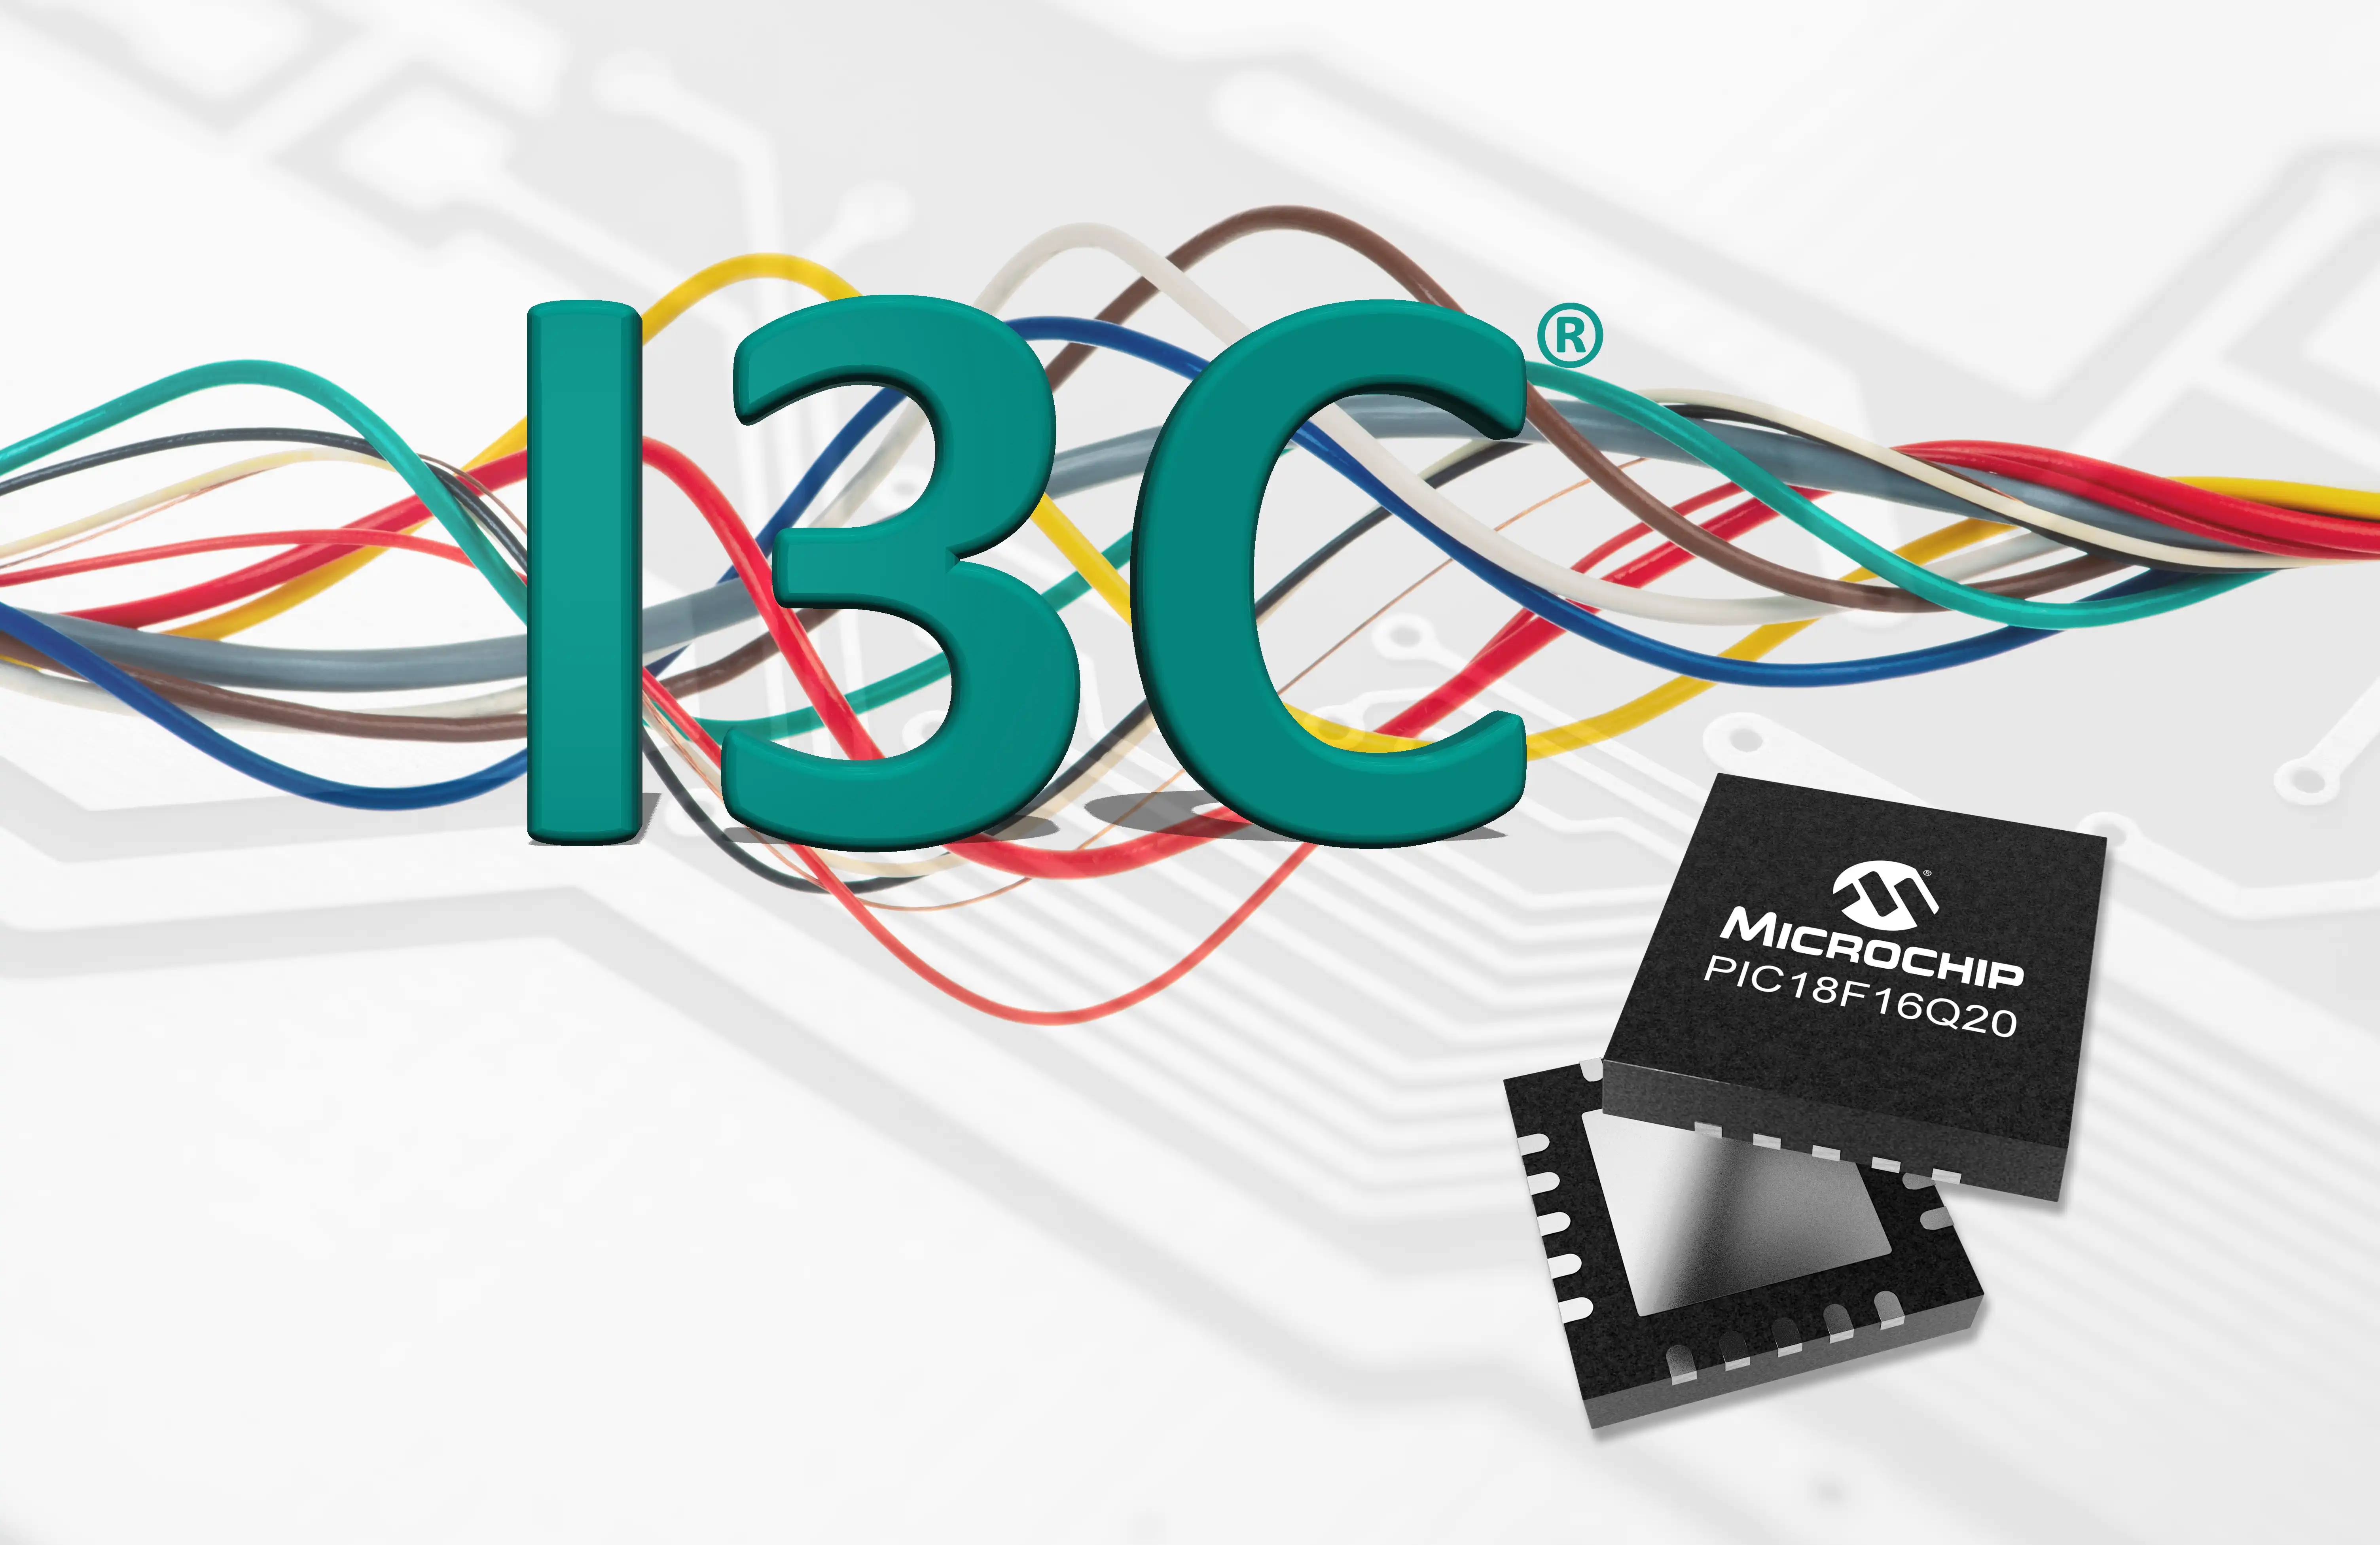 Microchip giới thiệu dòng sản phẩm MCU ít chân đầu tiên trong ngành với khả năng hỗ trợ I3C